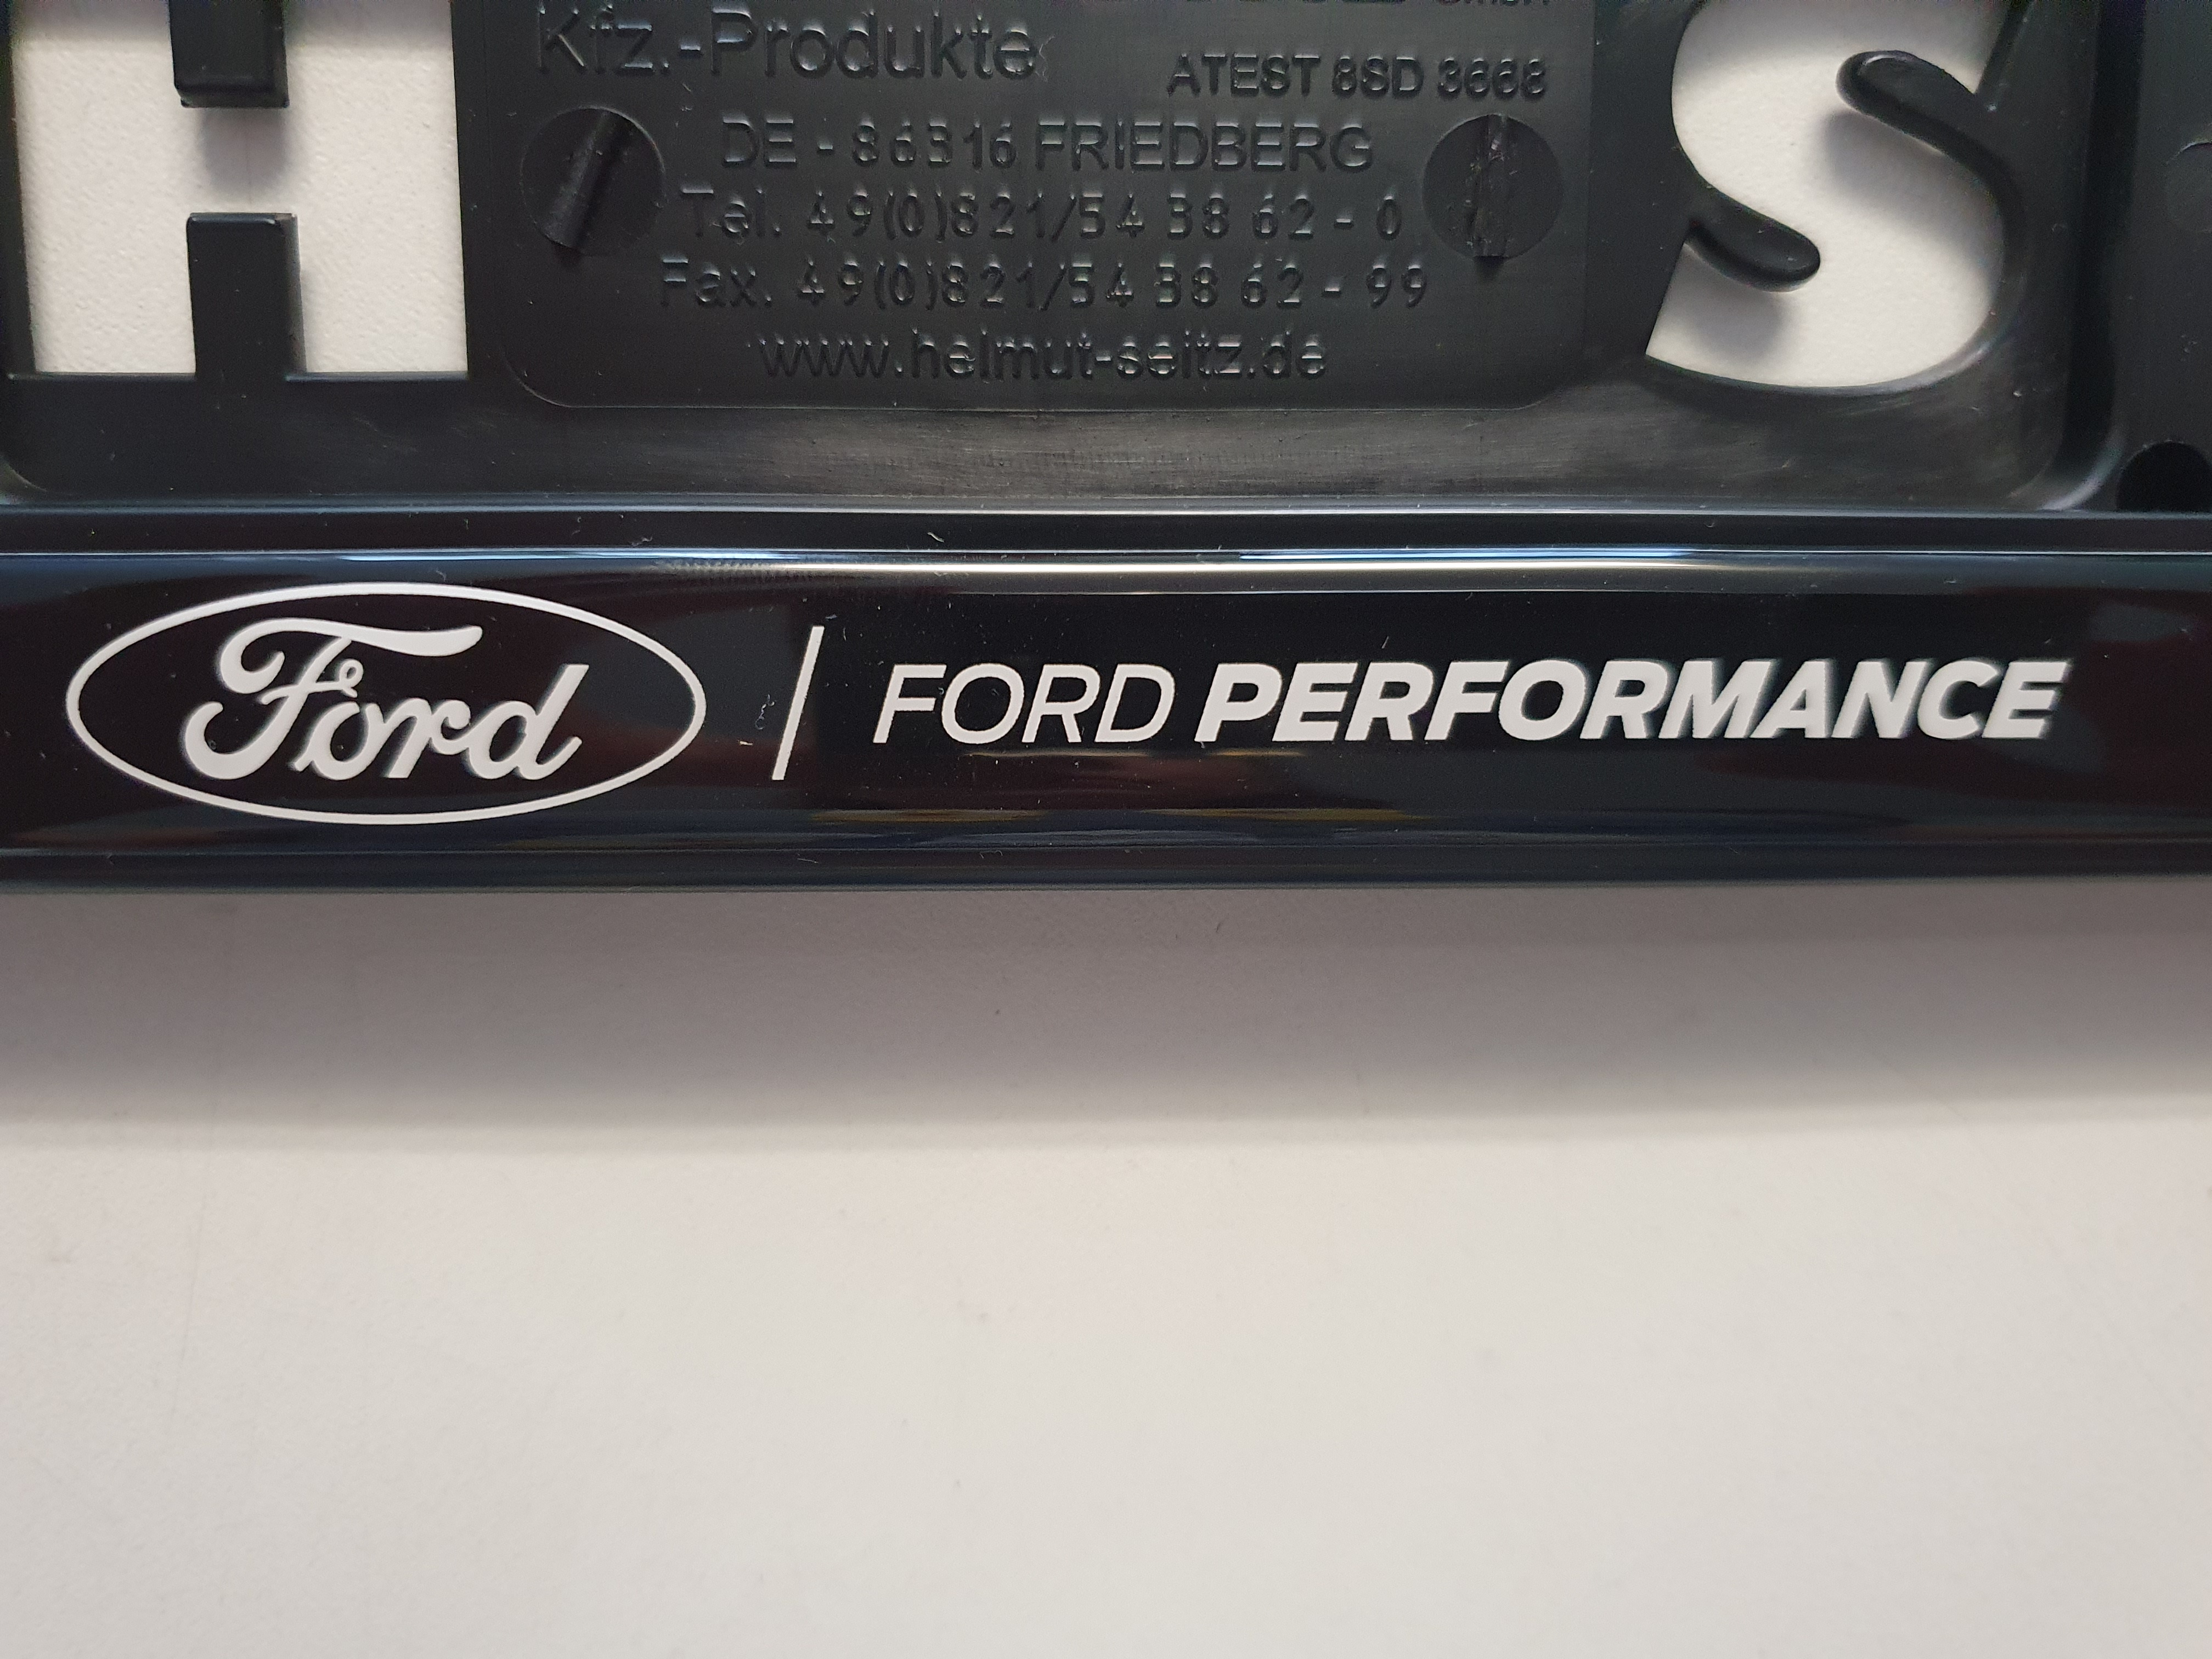 Ford Performance - Kennzeichenhalter schwarz, mit Ford Performance